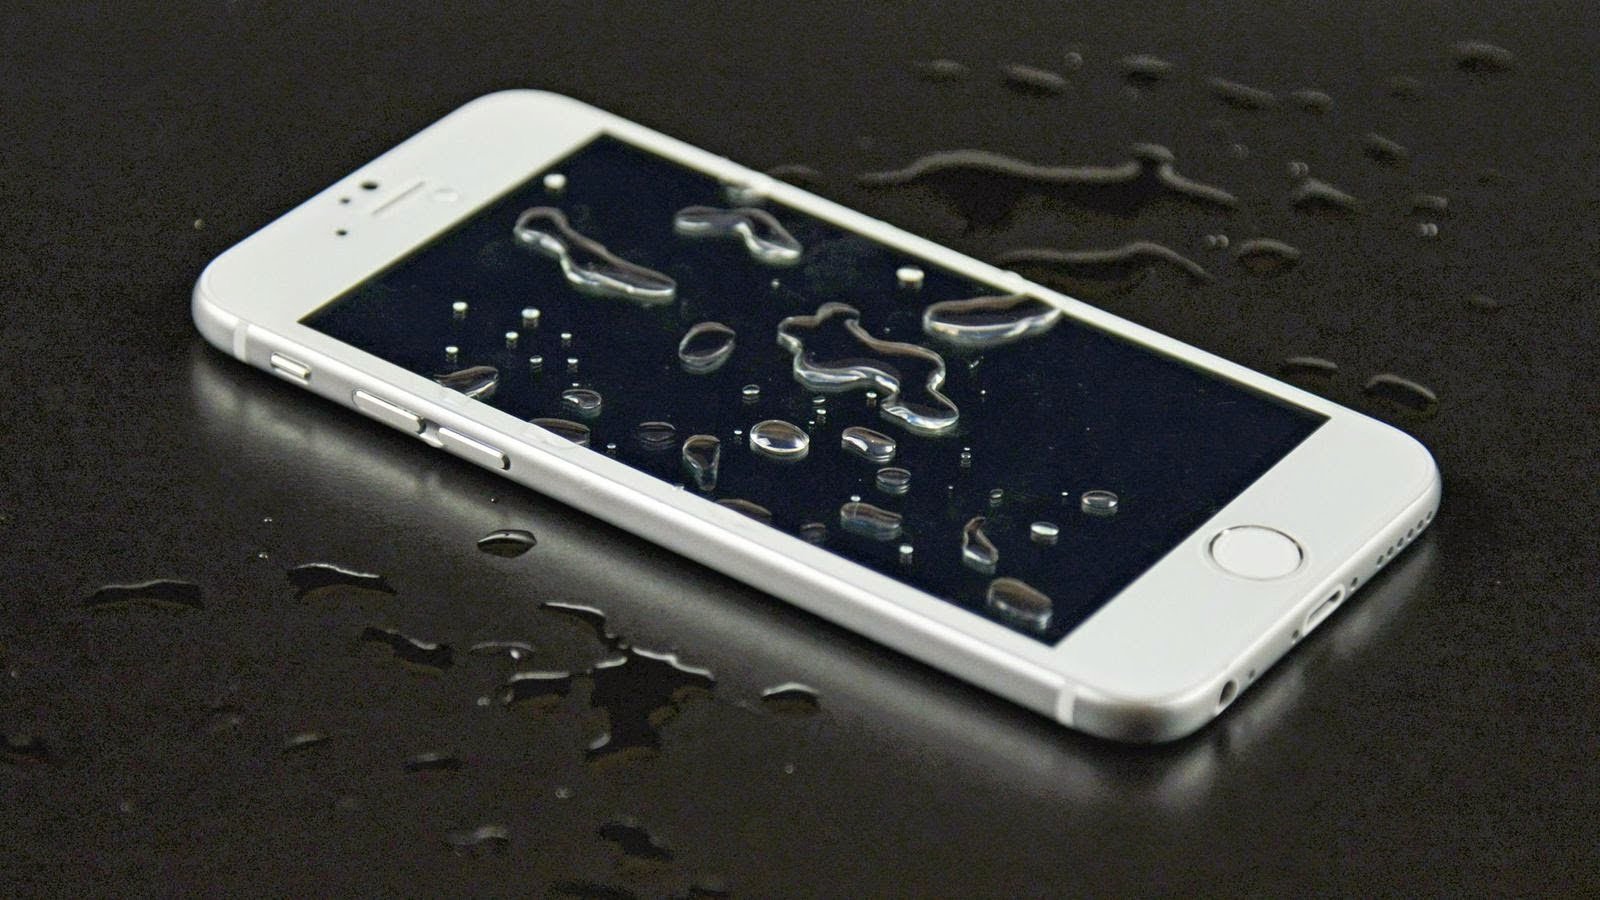 O meu iPhone caiu na água. E agora?